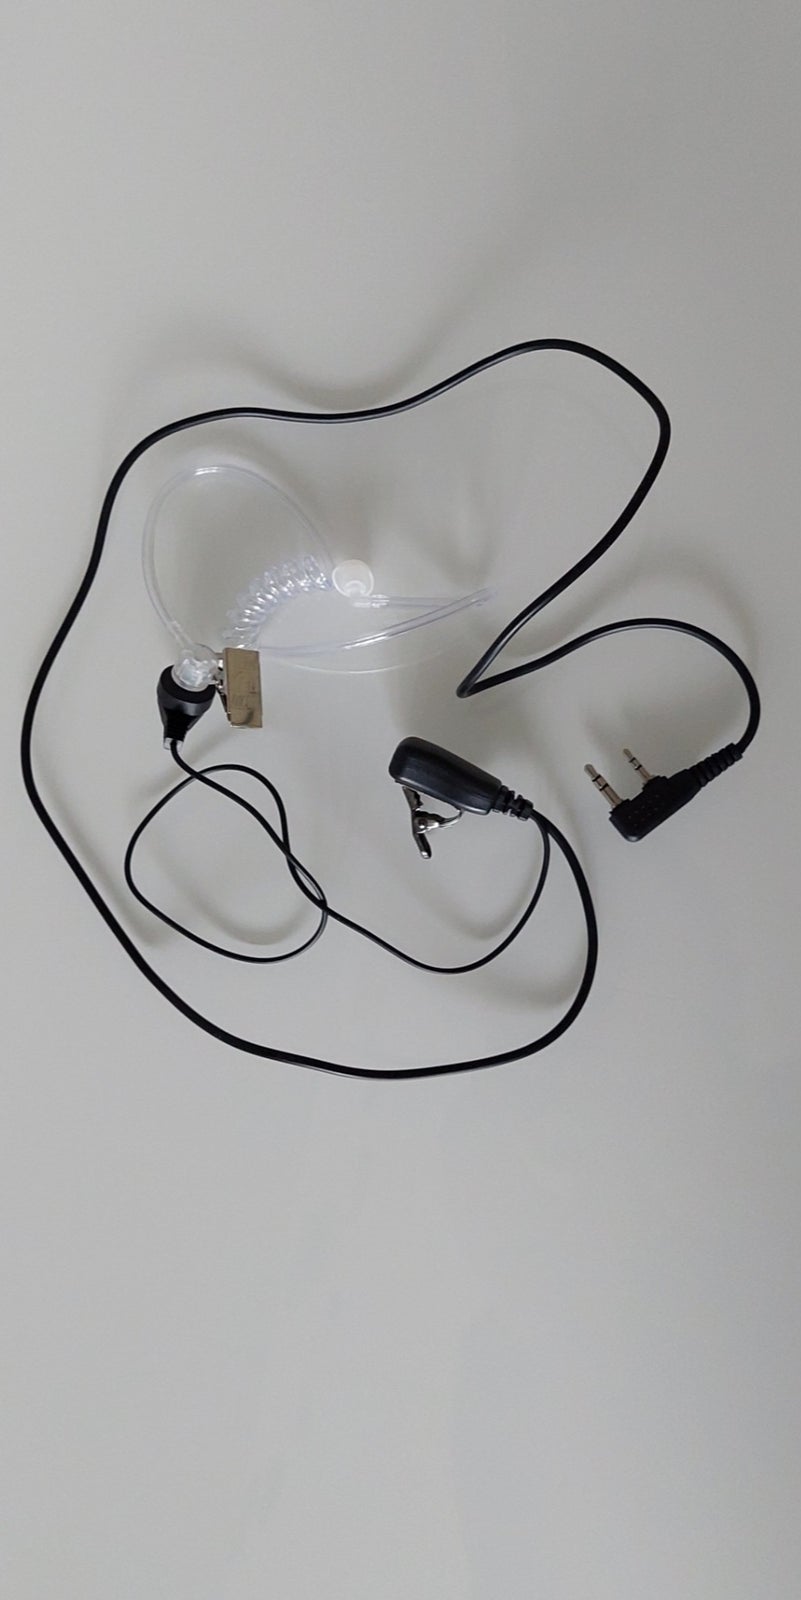 Headset til walkie talkie passer bl.a. til Baofeng,